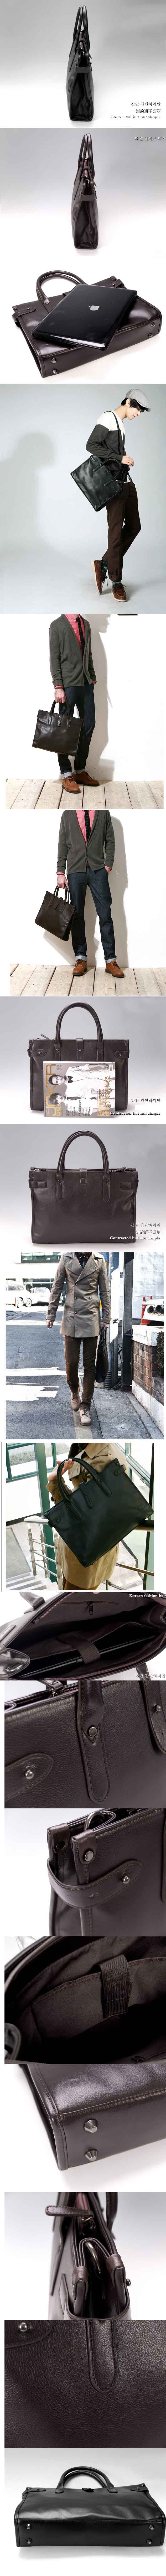 jual tas kerja kulit untuk pria modern , temukan koleksi tas kerja pria model terbaru dengan desain keren hanya di pfp store